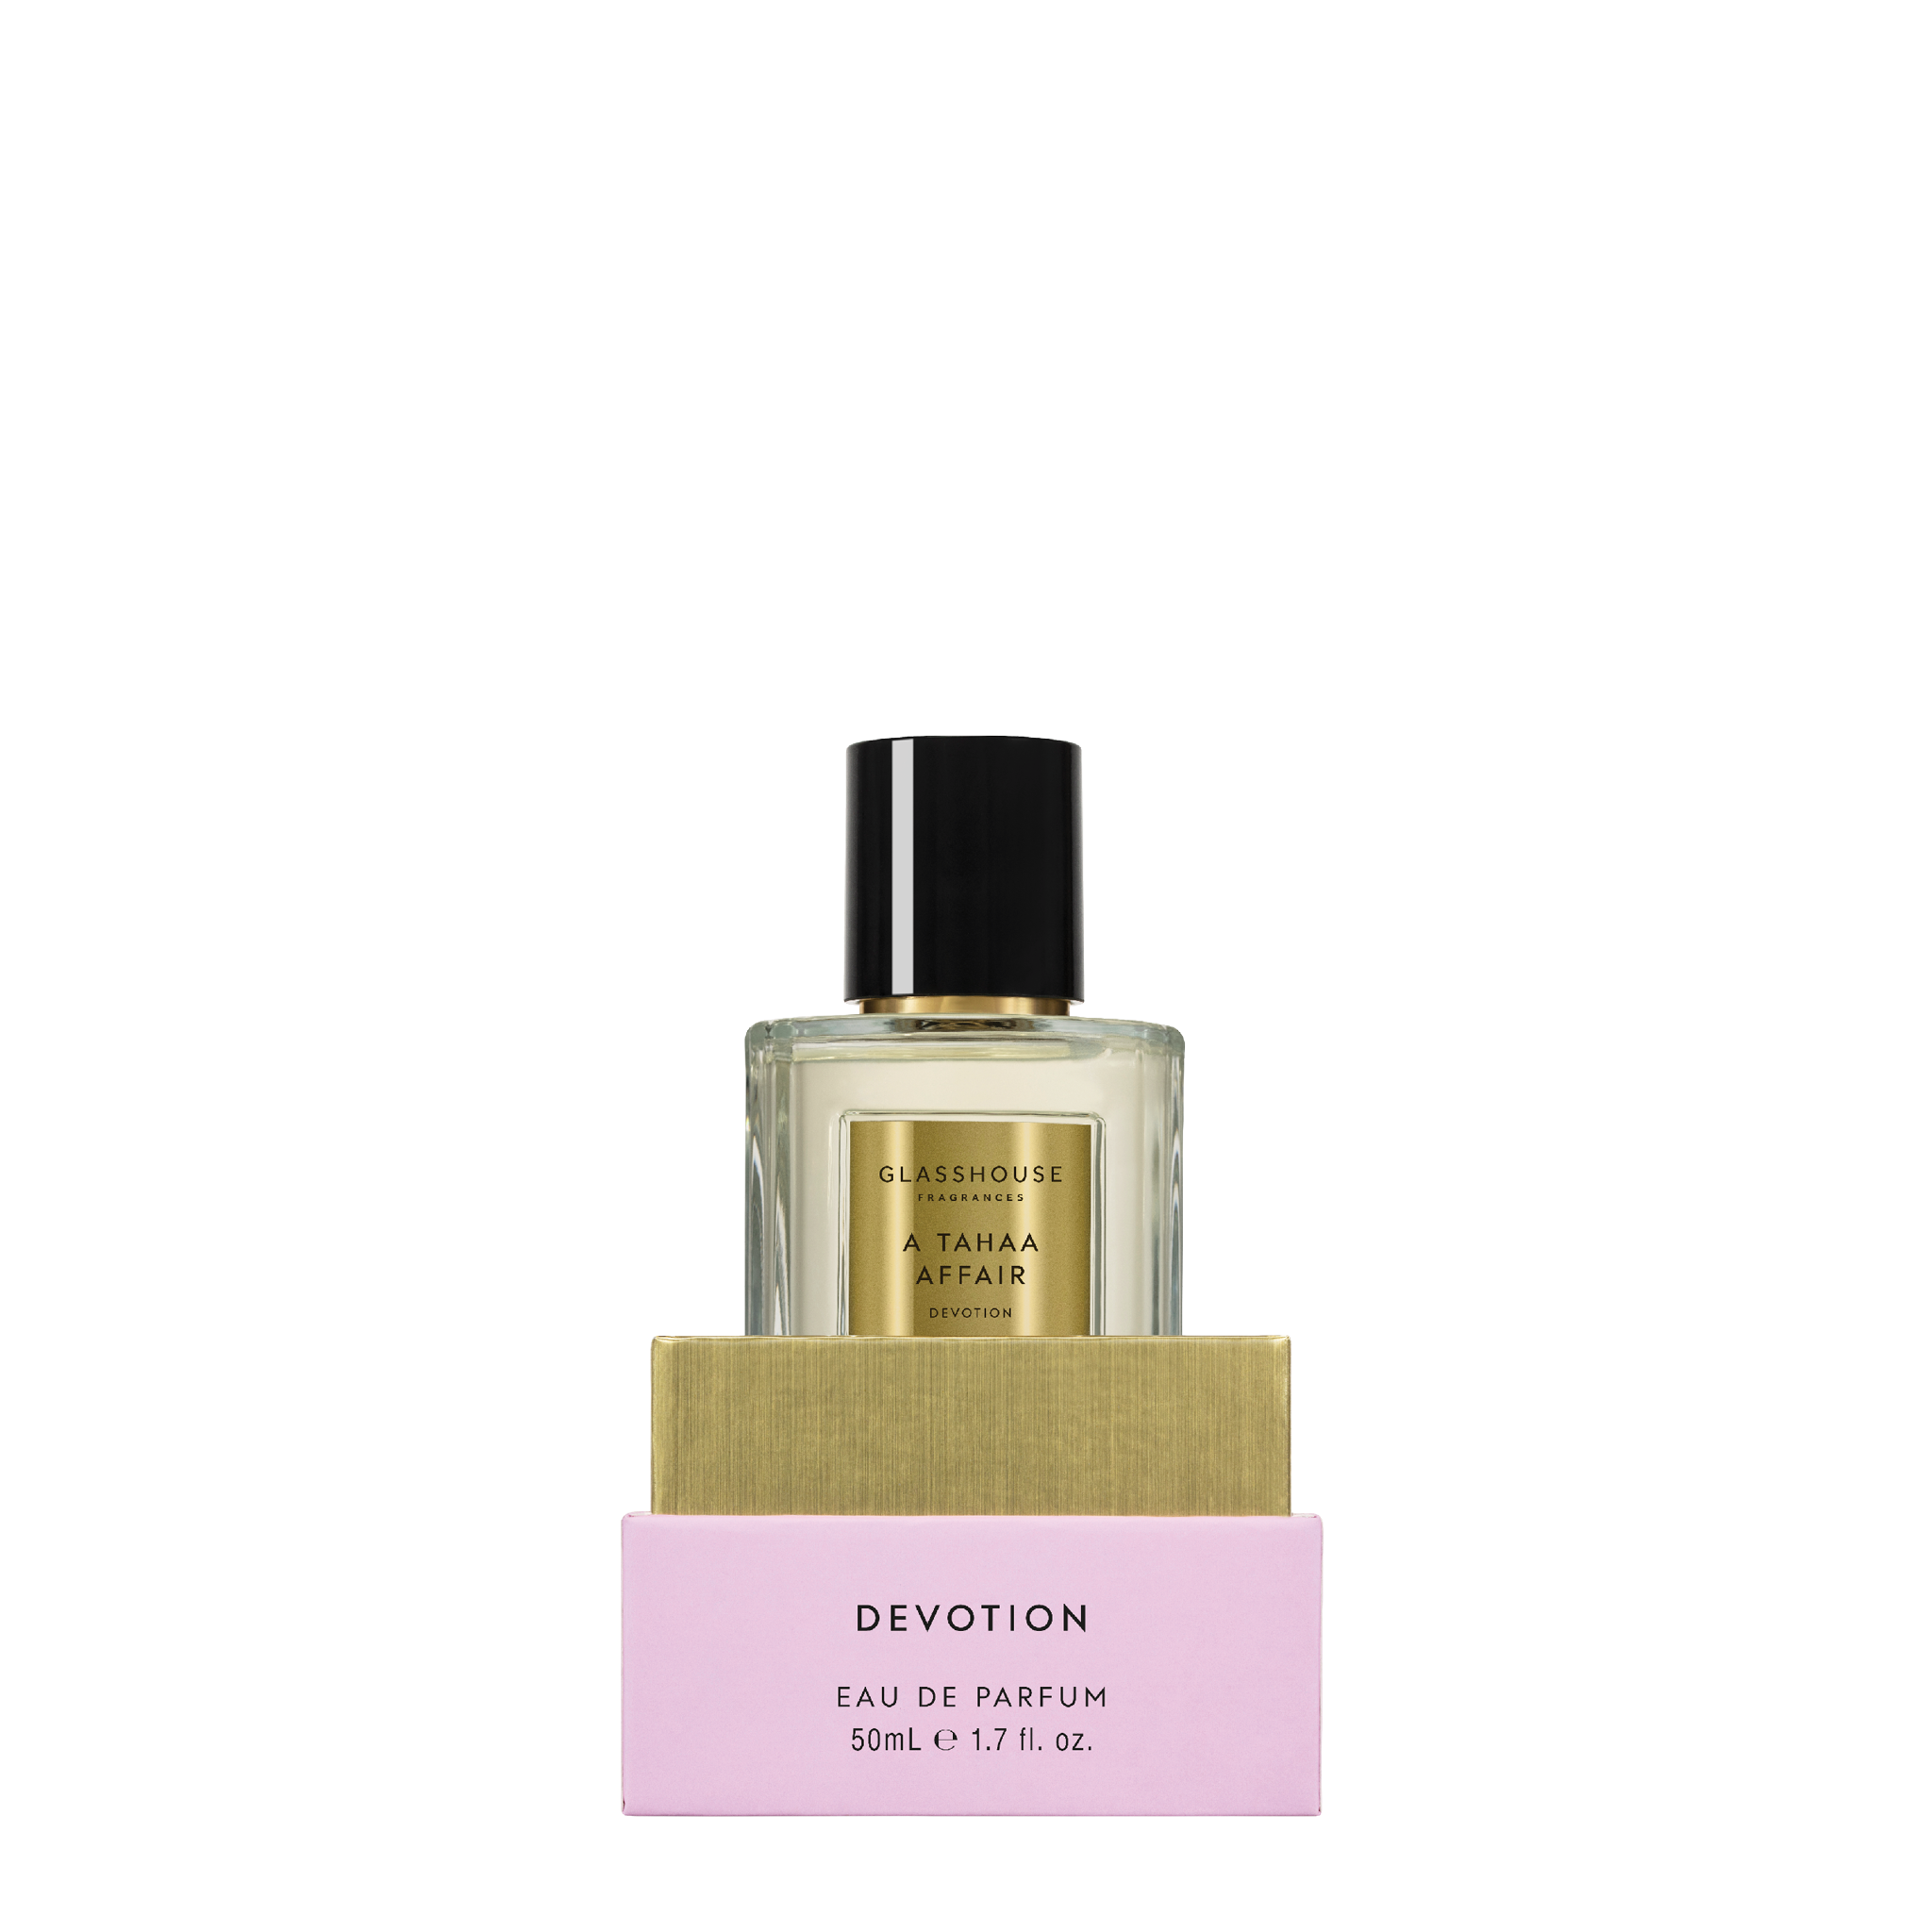 Glasshouse Fragrances A Tahaa Affair Vanilla Caramel 50mL Eau de Parfum spray inside box